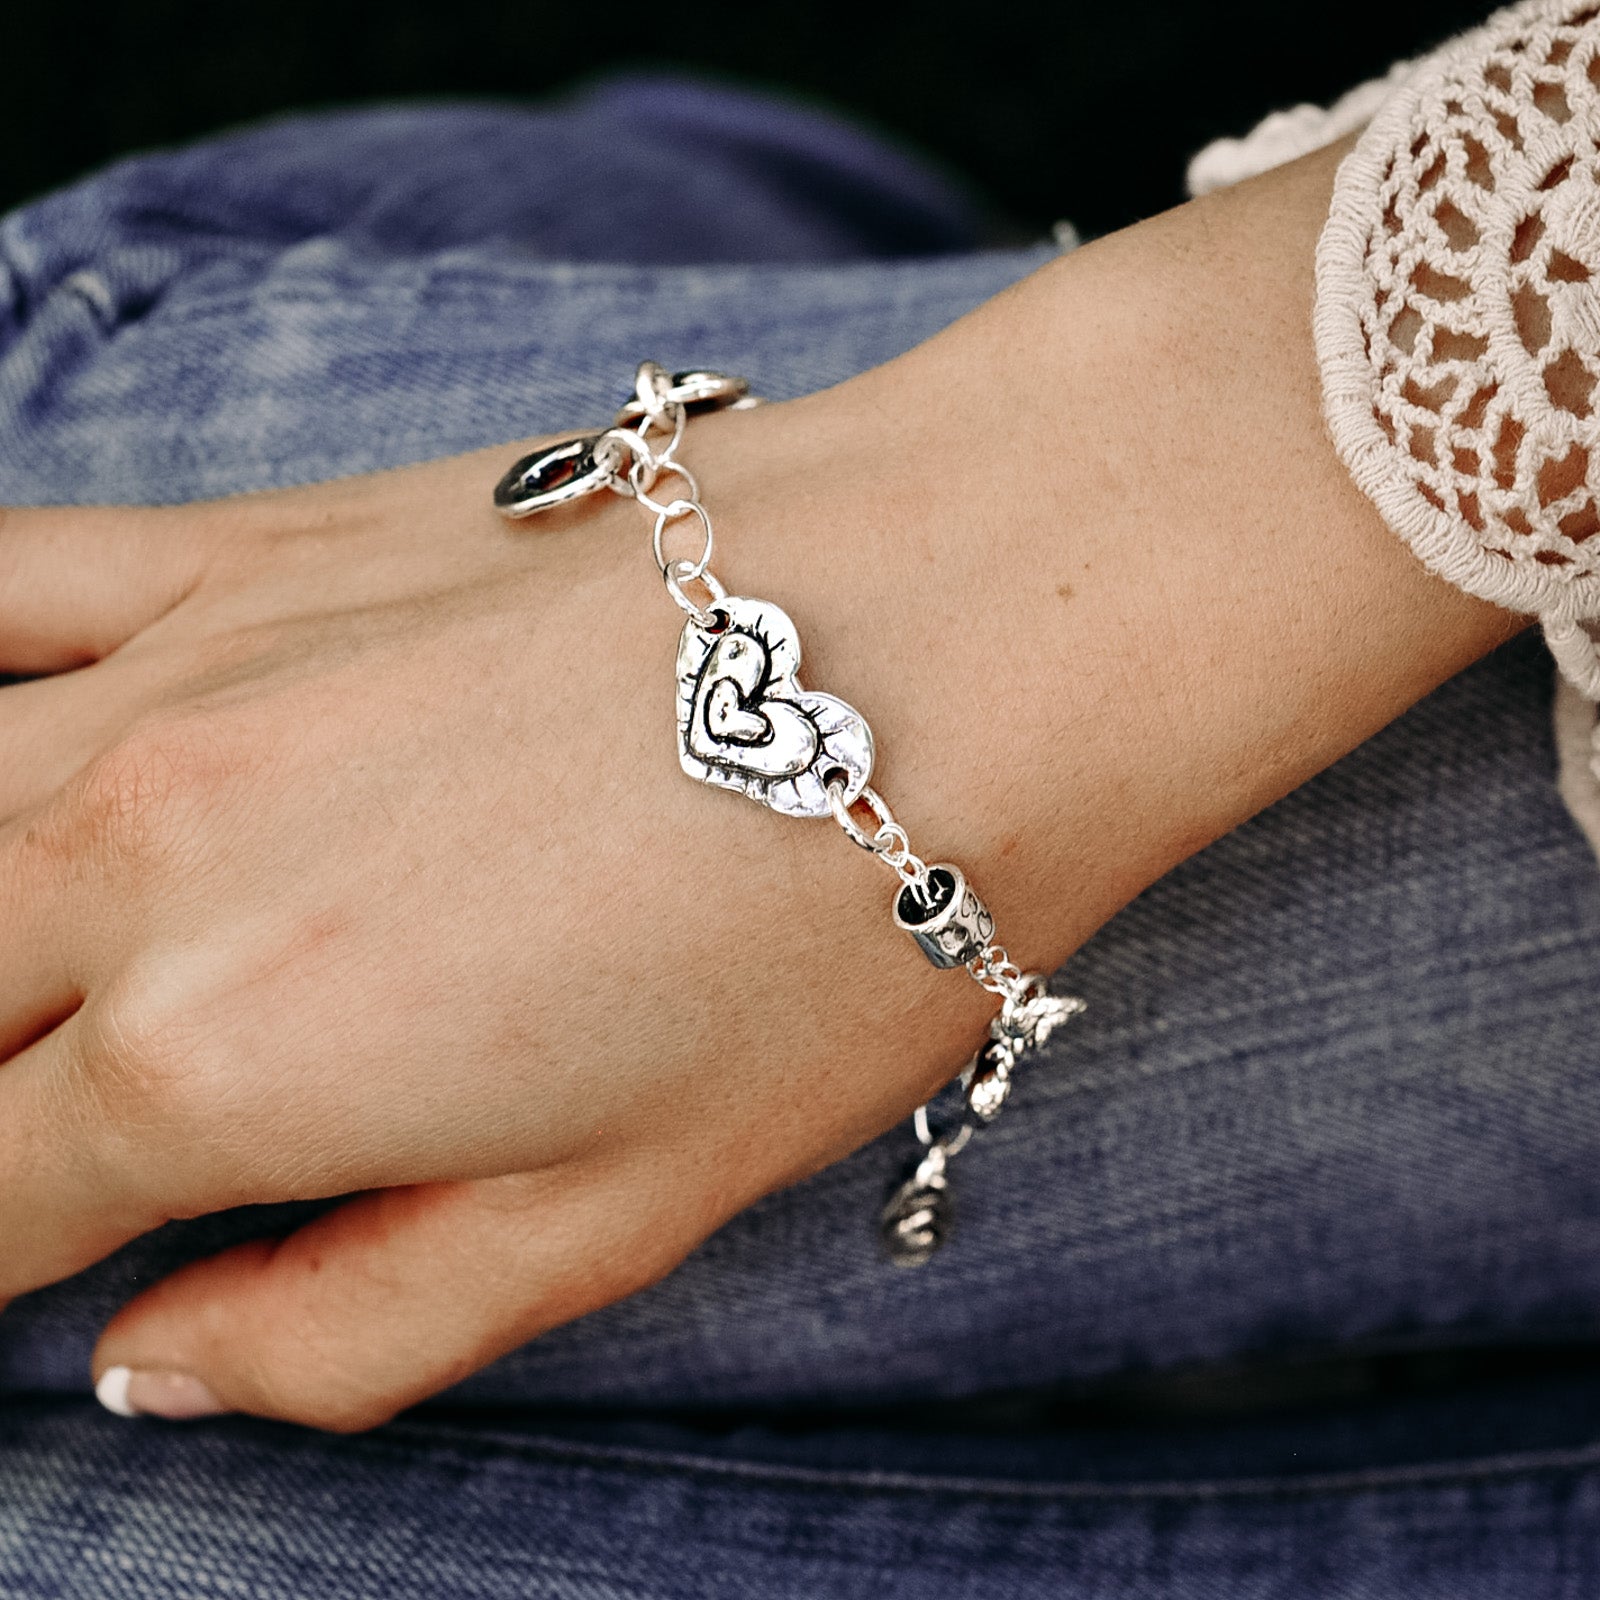 Heart love token bracelets shown next to the Omne Bonum (Latin for